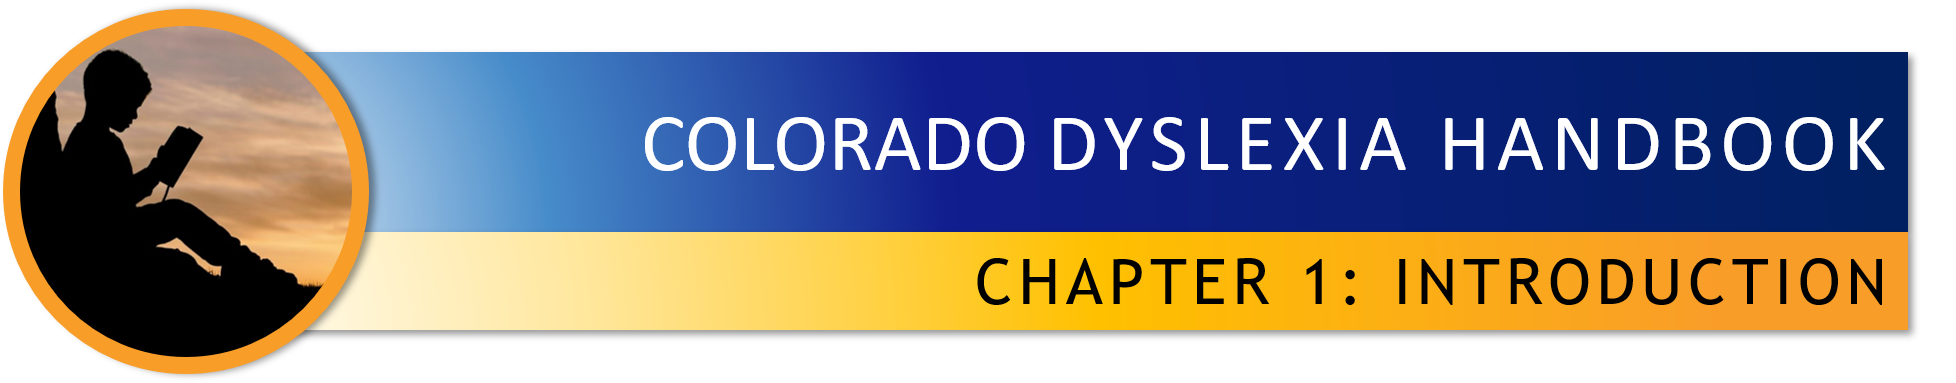 Colorado Dyslexia Handbook - Chapter 1 Introduction